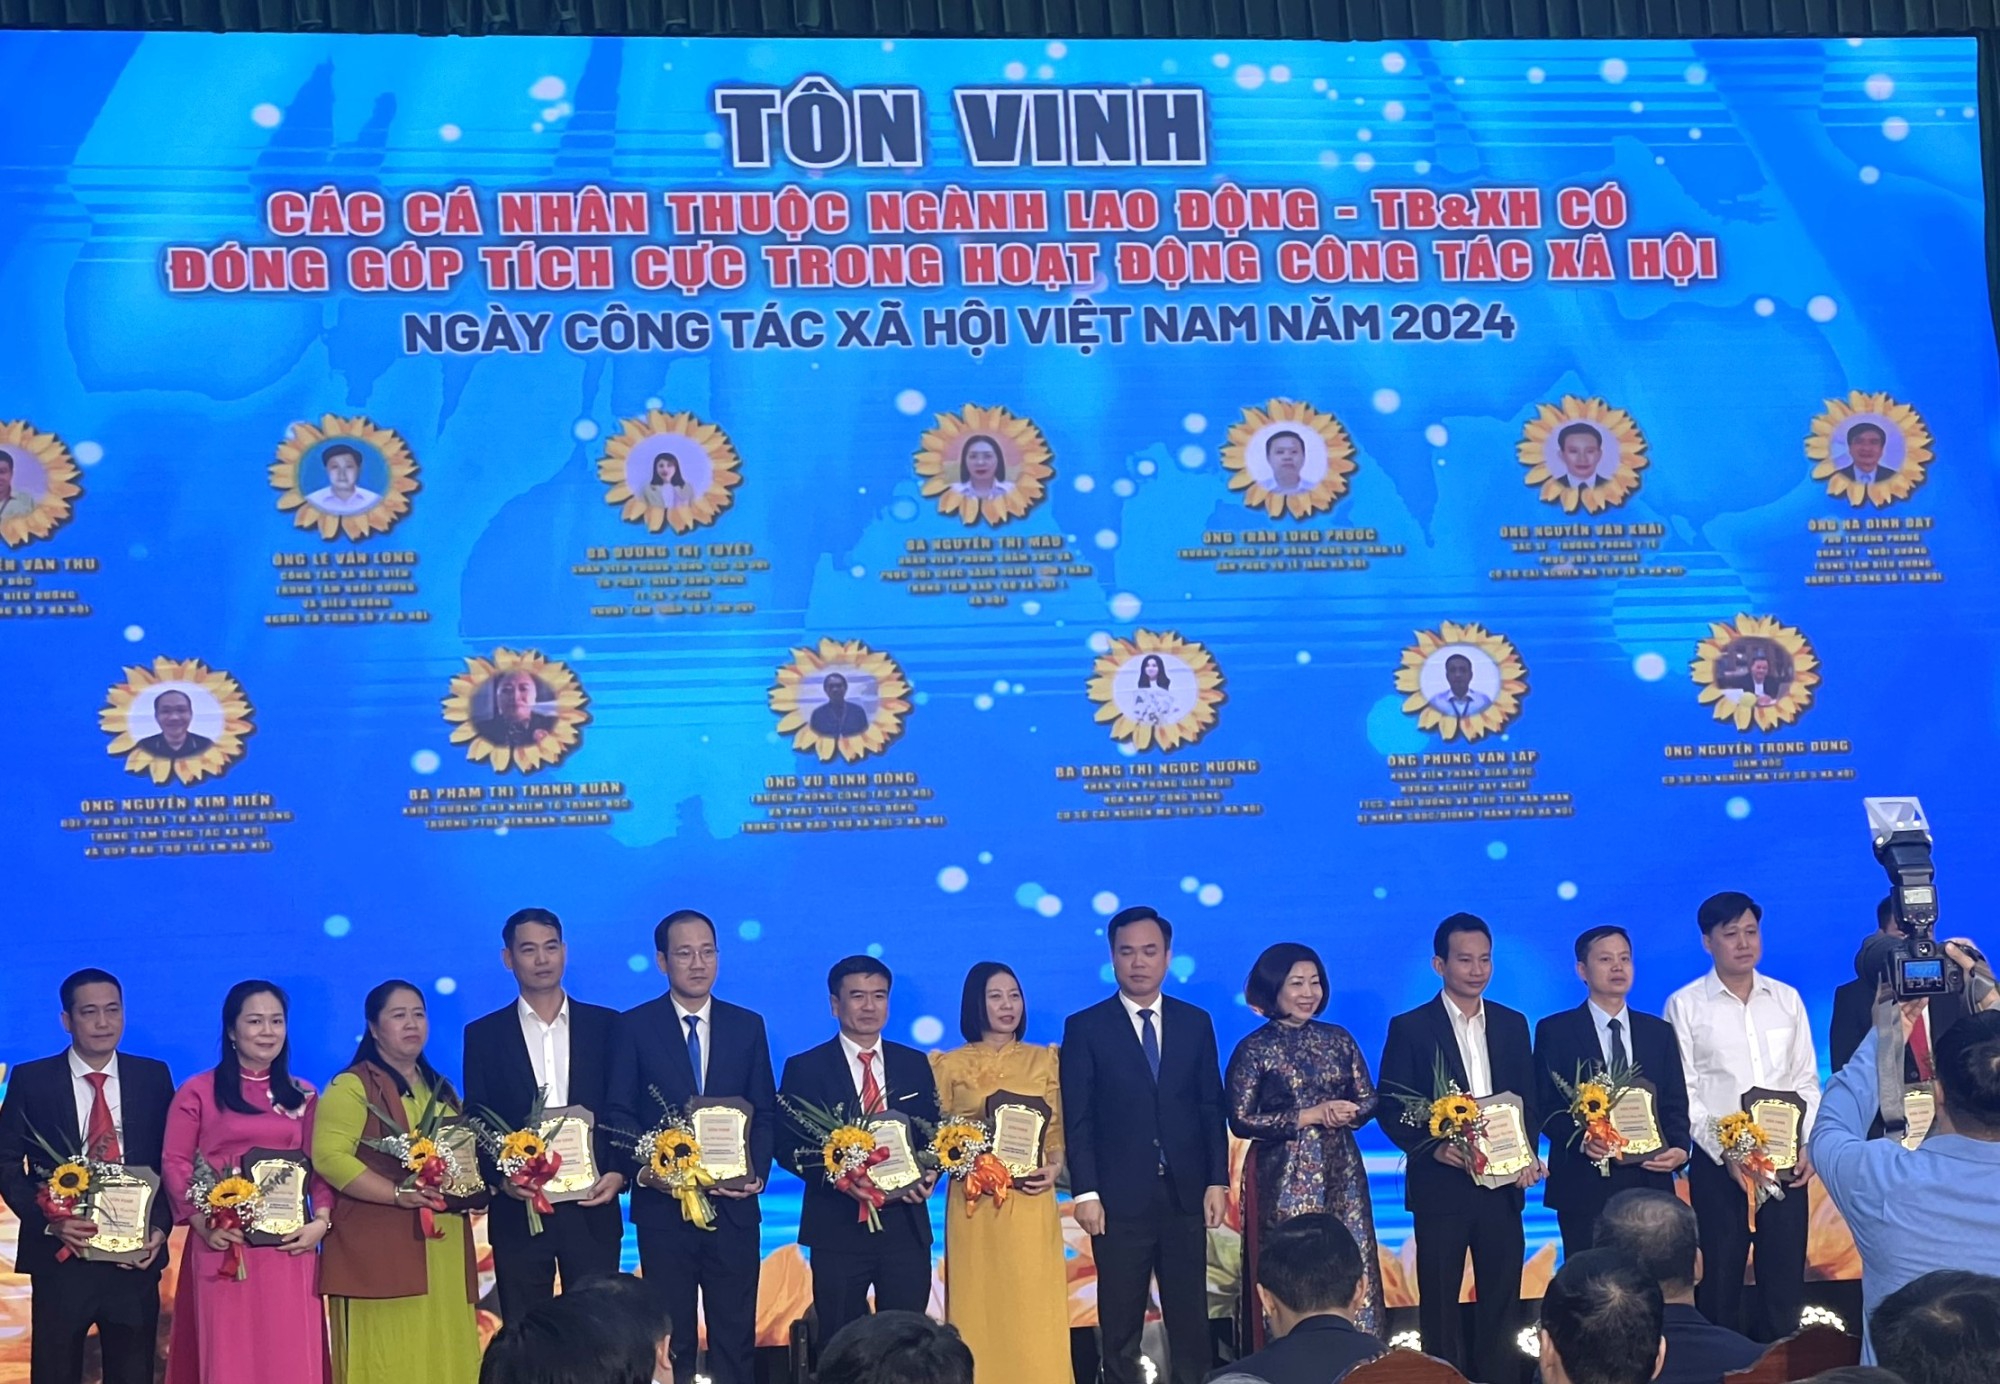 Xin chúc mừng Cô giáo Phạm Thị Thanh Xuân đã được Tôn vinh cá nhân có đóng góp tích cực trong hoạt động Công tác xã hội ,Lễ Kỷ niệm Ngày Công tác xã hội Việt Nam năm 2024.